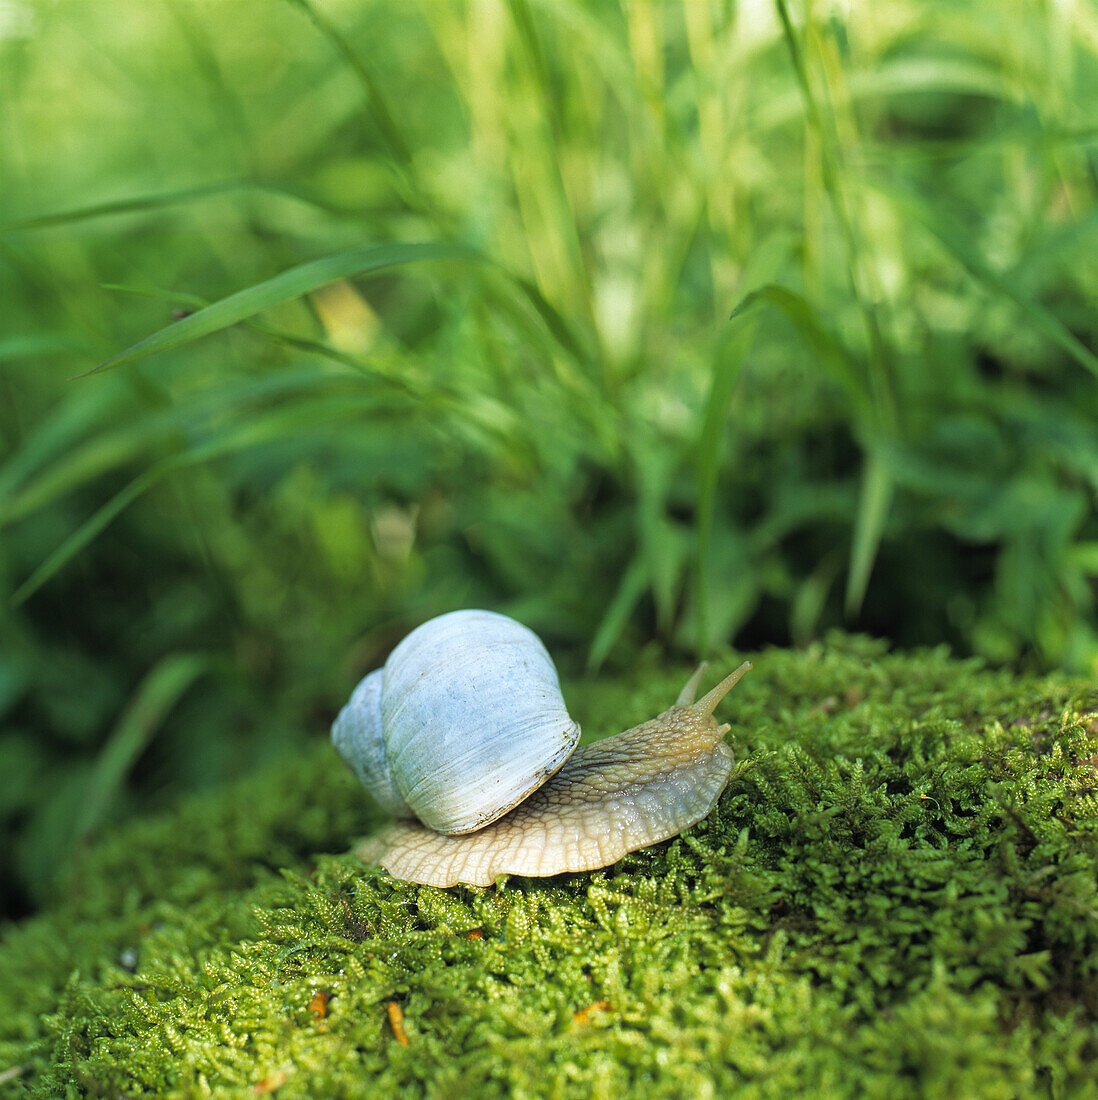 Edible snail, Helix pomatia